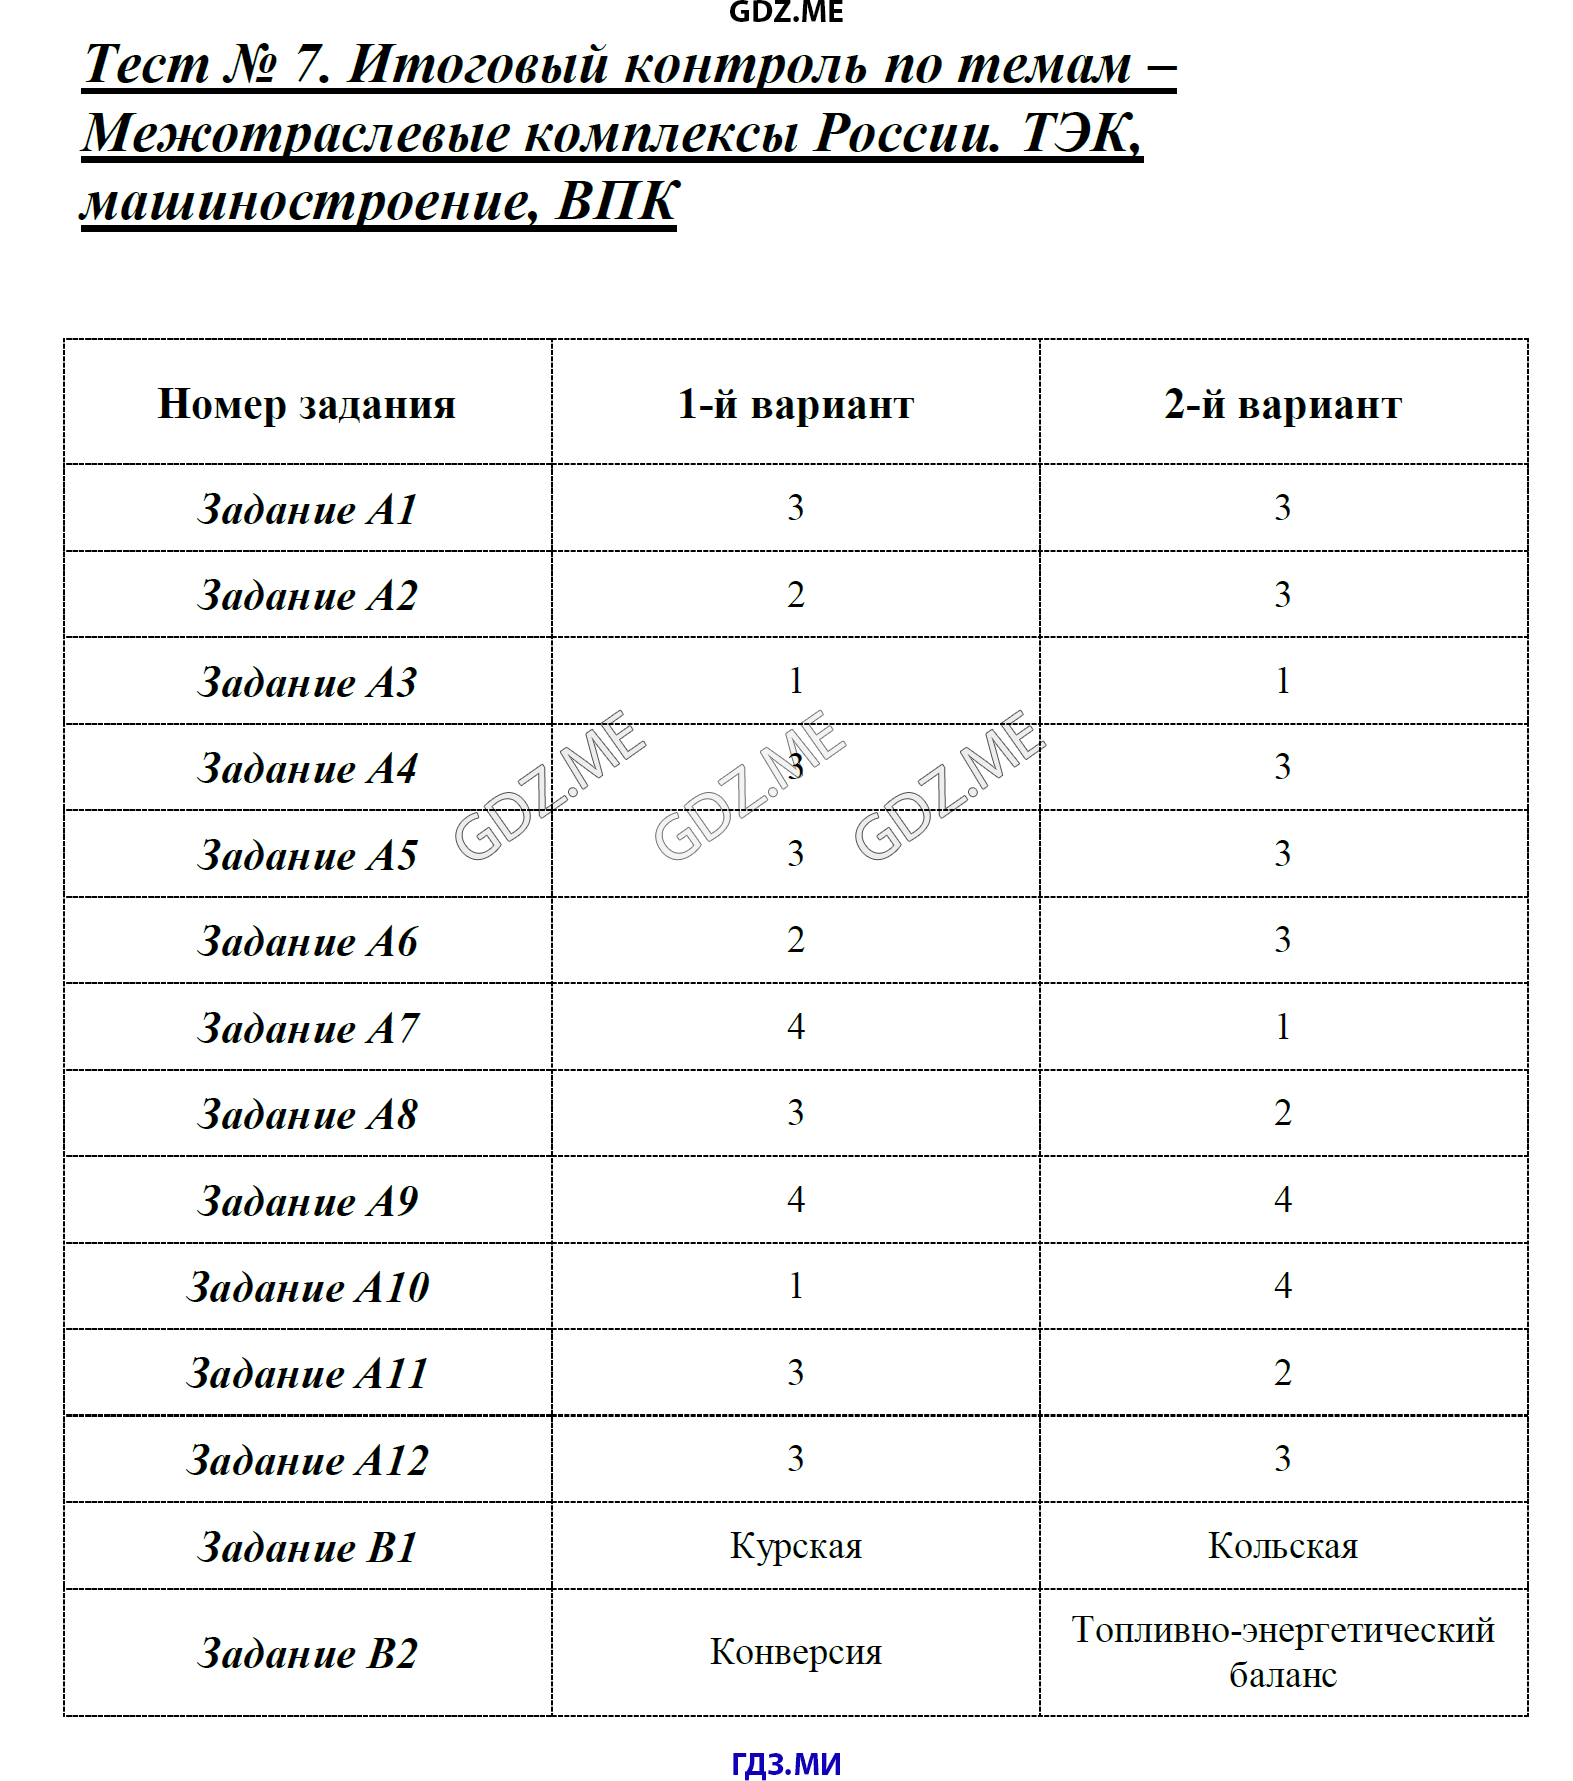 Административные контрольные тесты по географии для 7 класса с ответами на башкирском языке